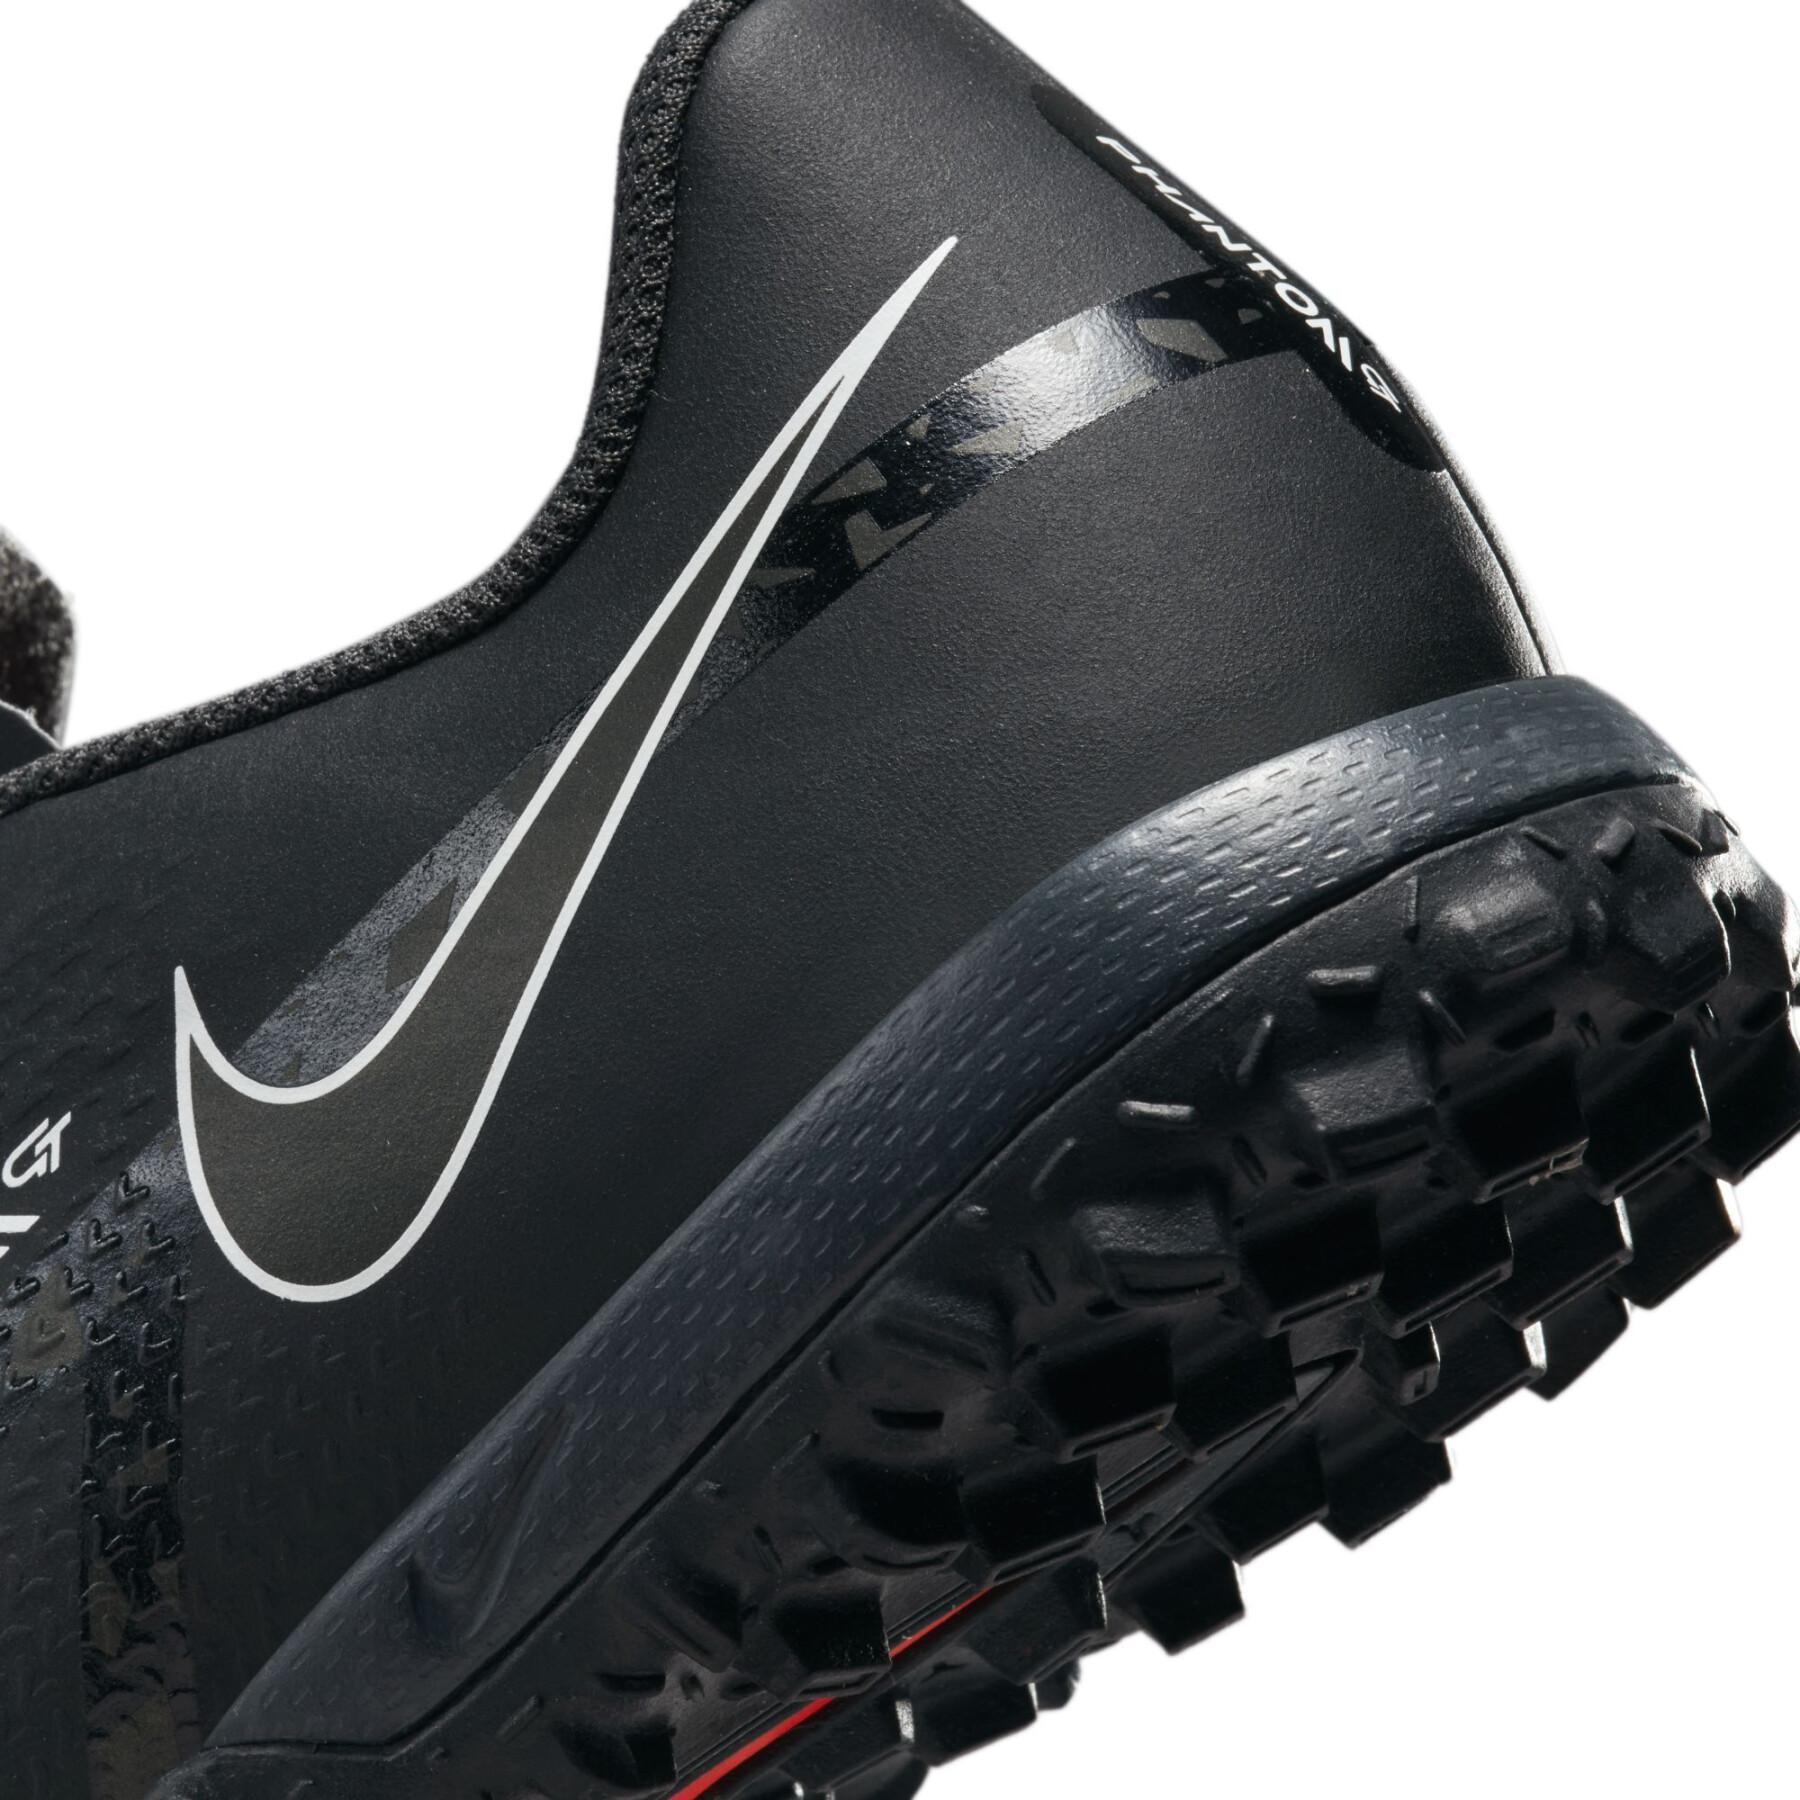 Sapatos de futebol para crianças Nike Phantom GT2 Academy TF - Shadow Black Pack